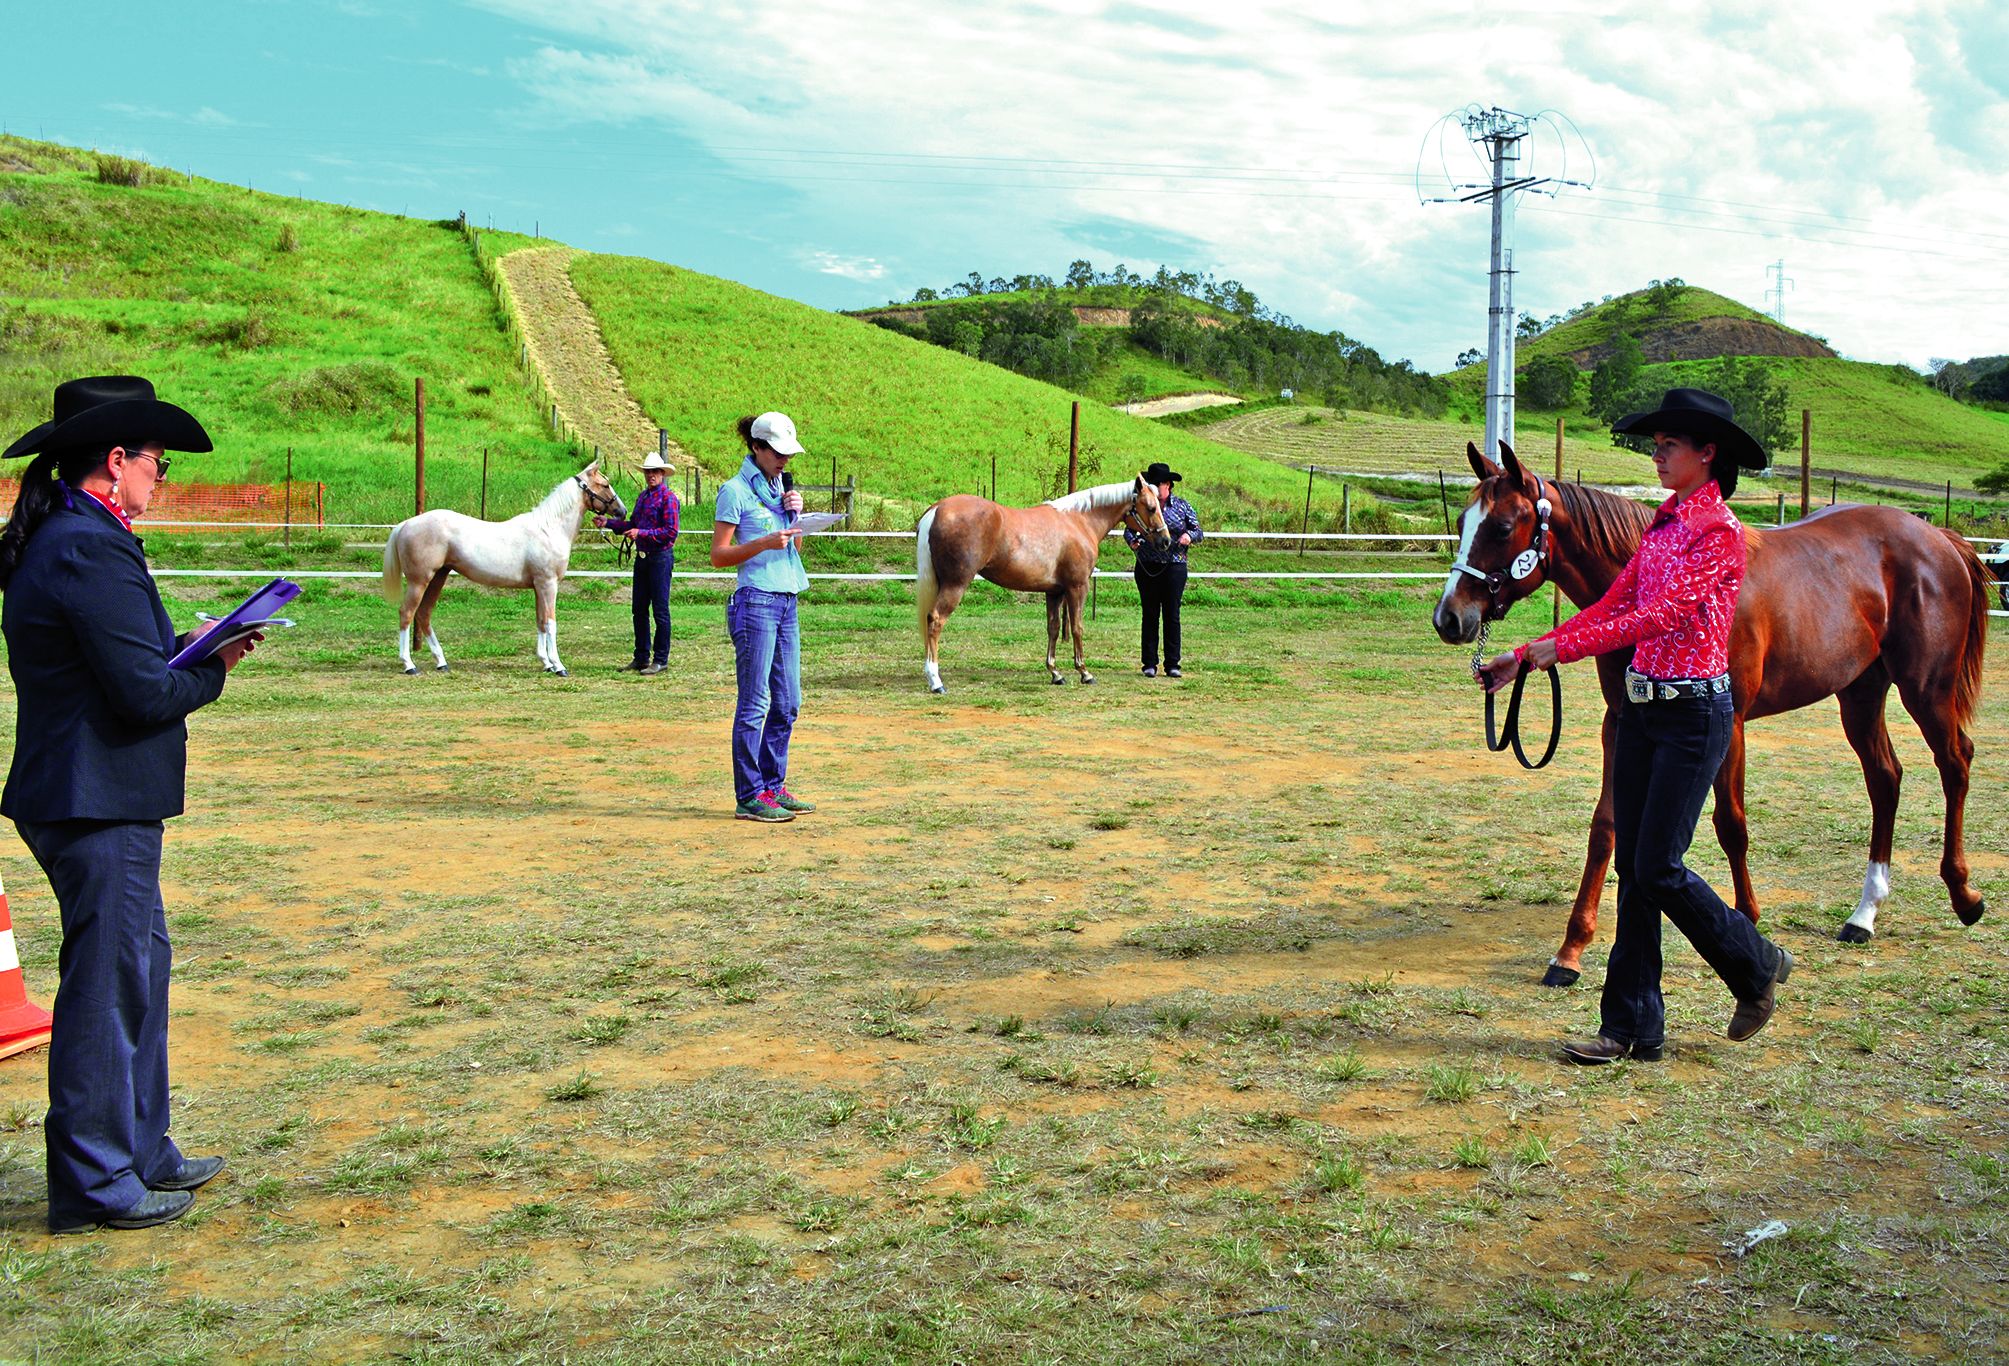 Une soixantaine de chevaux ont été présentés au concours équin. Les races Quarter Horses, Paint Horses et Appaloosas ont été passées au crible par Patricia Wettenhall, juge spécialement venue d’Australie. 